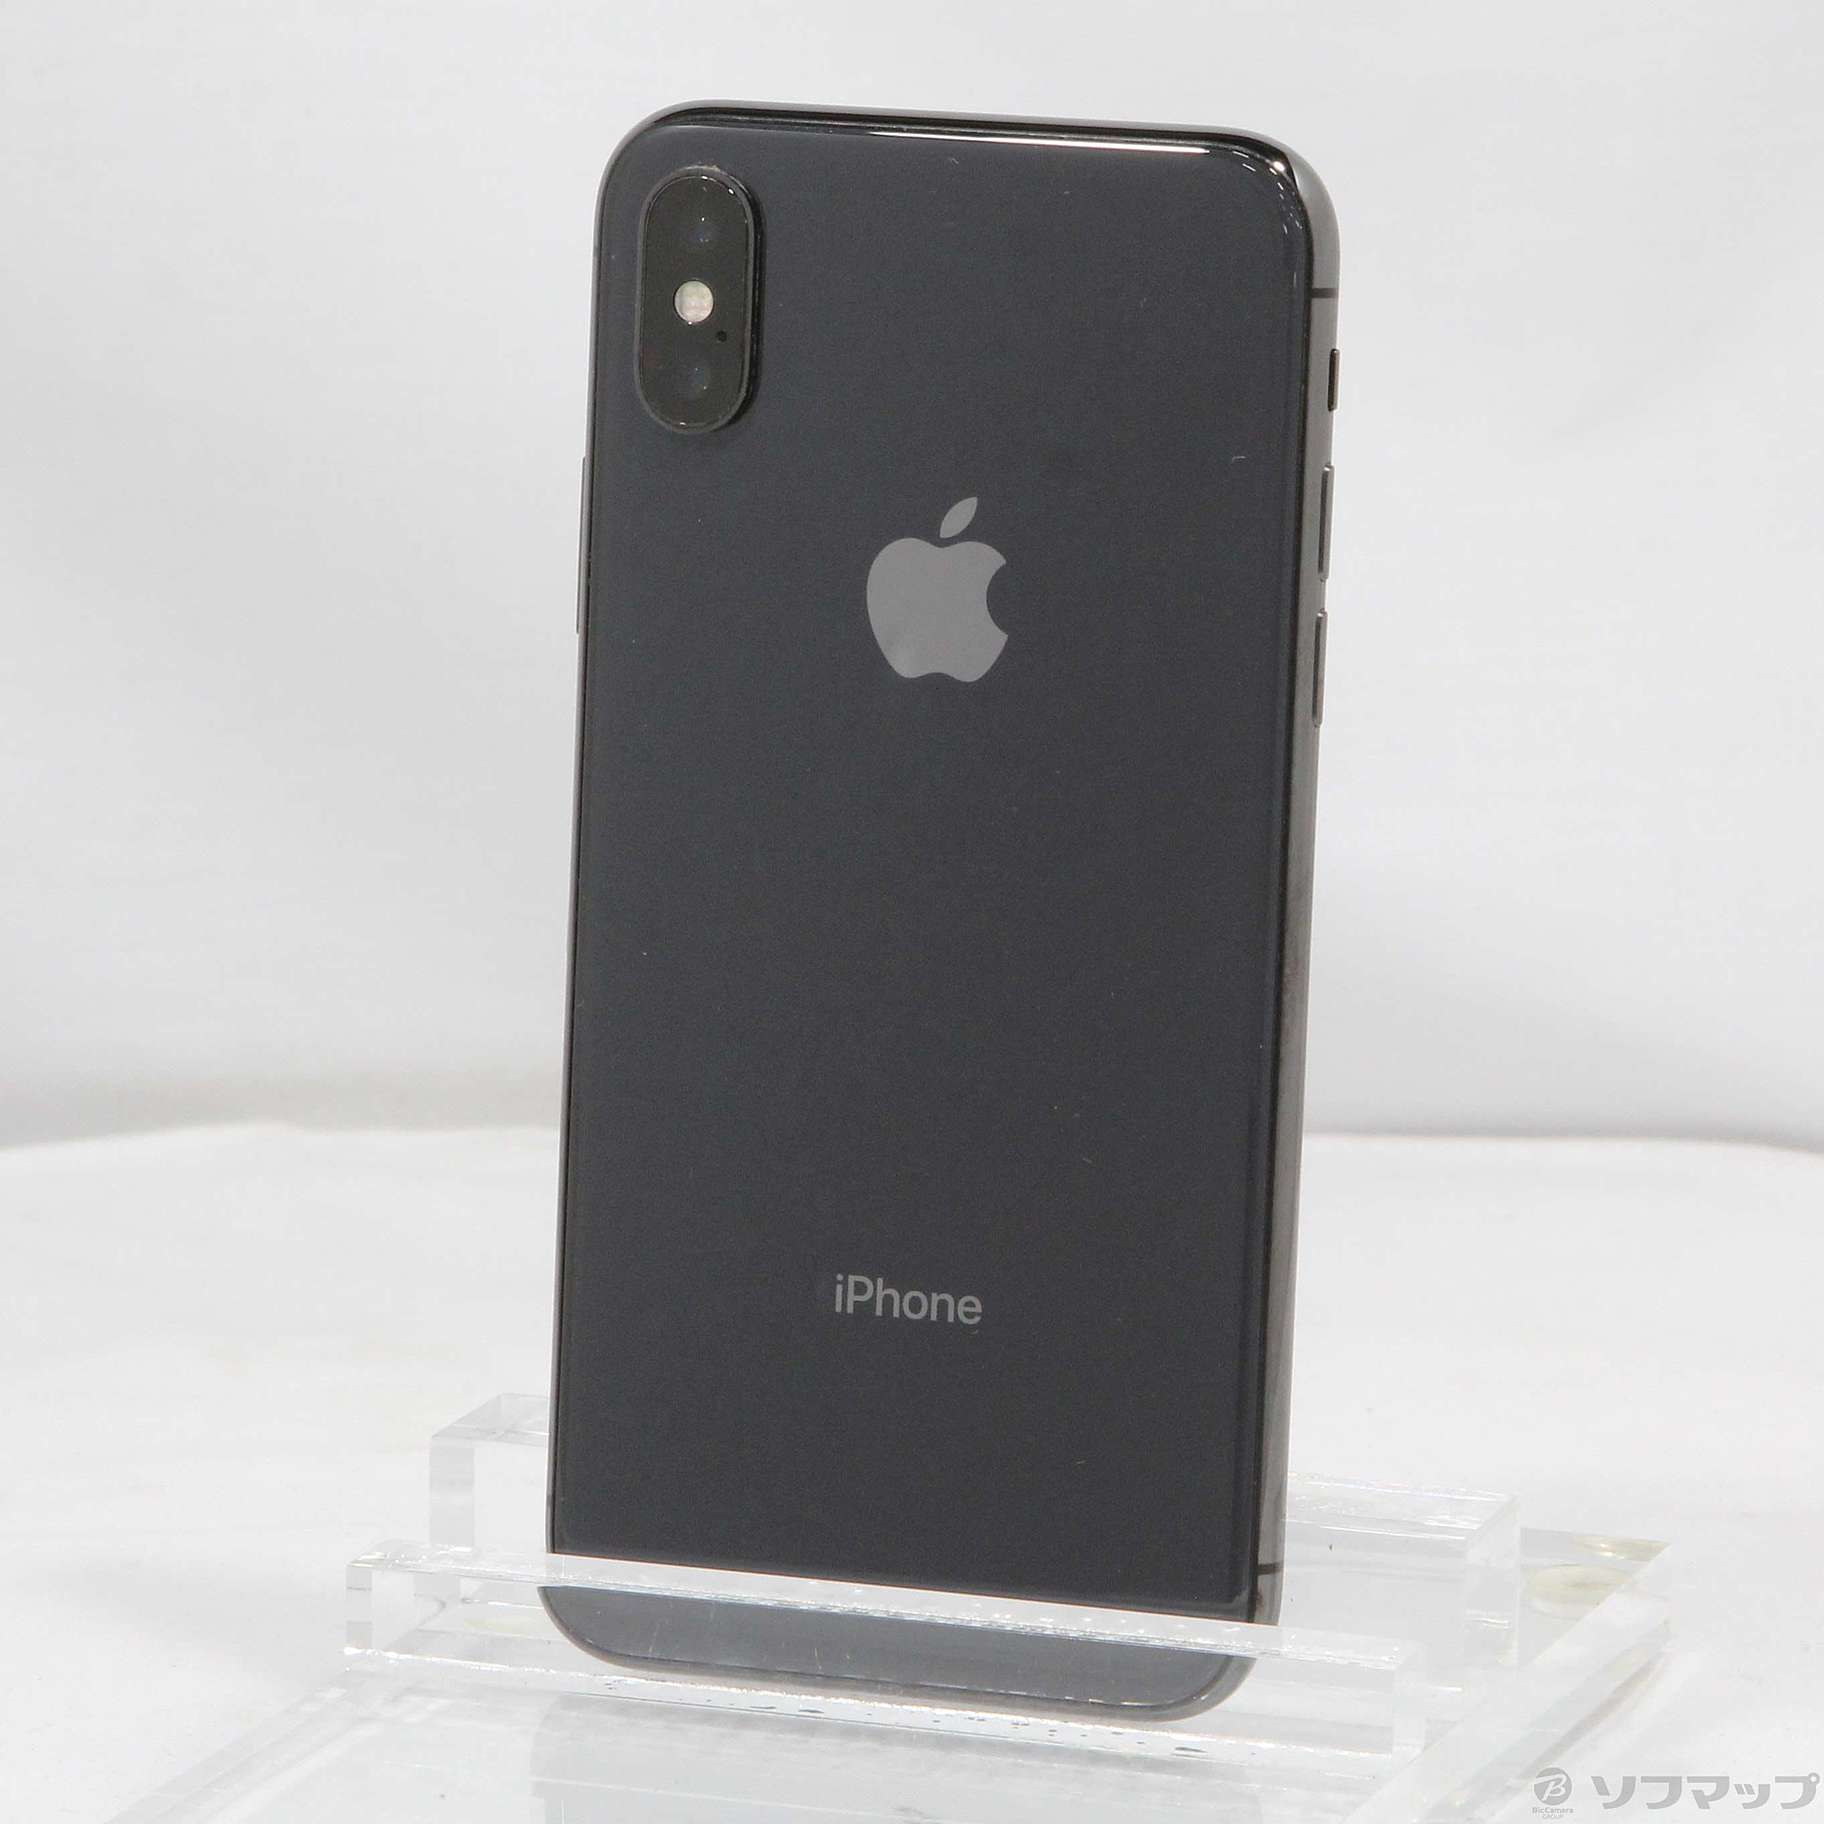 販売用新品SIMフリー iPhone X 256GB スペースグレイ MQC12J/A スマートフォン本体